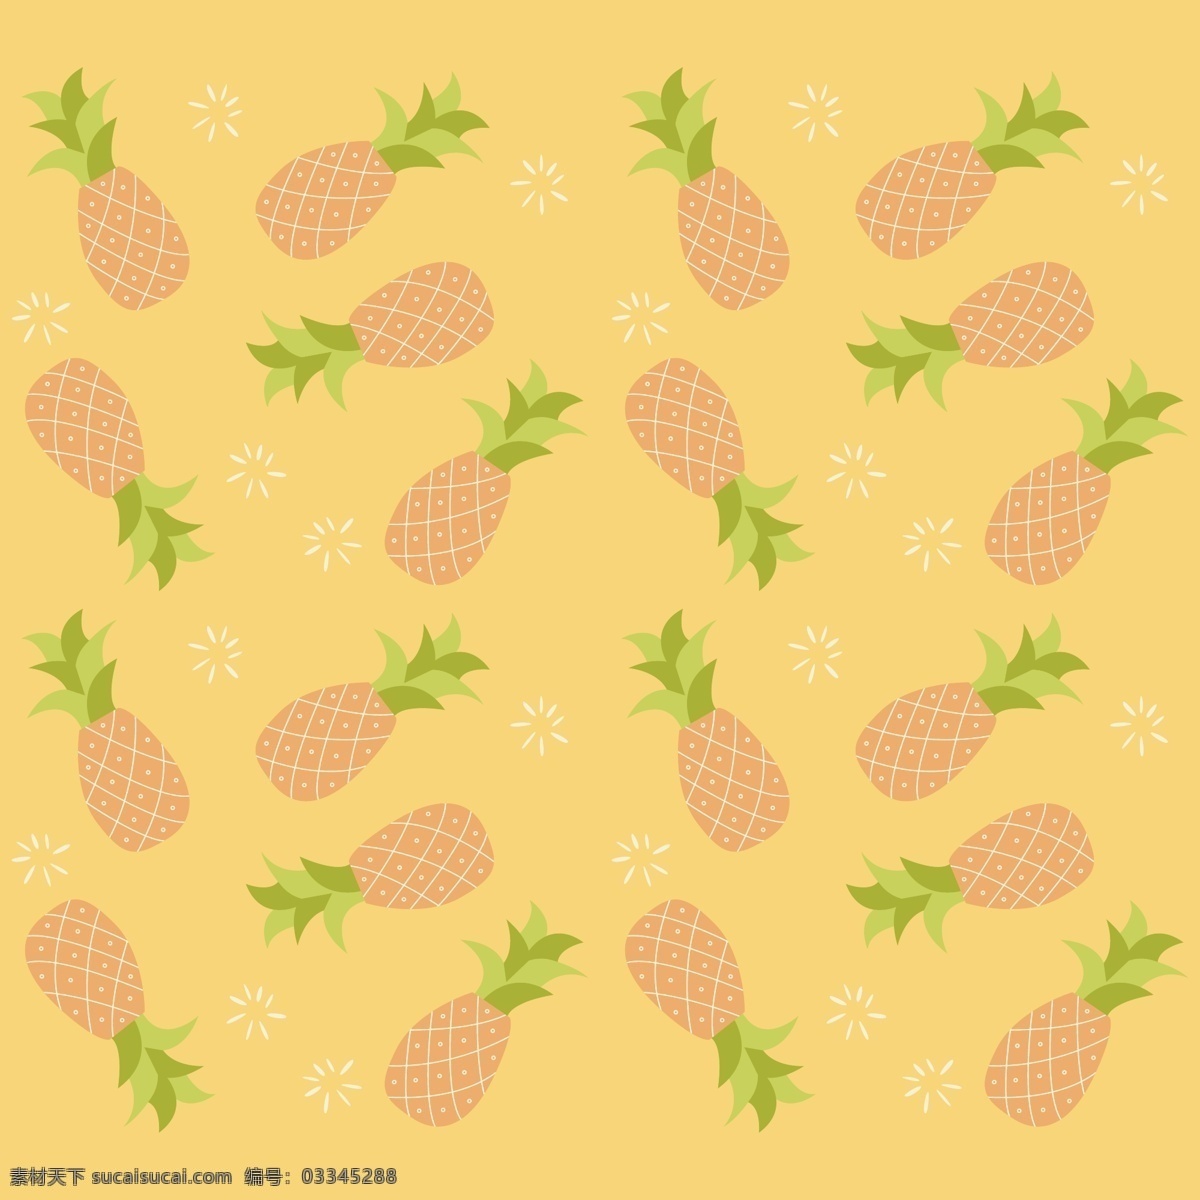 菠萝 背景 装饰 图案 菠萝图案 水果图案 装饰图案 黄色